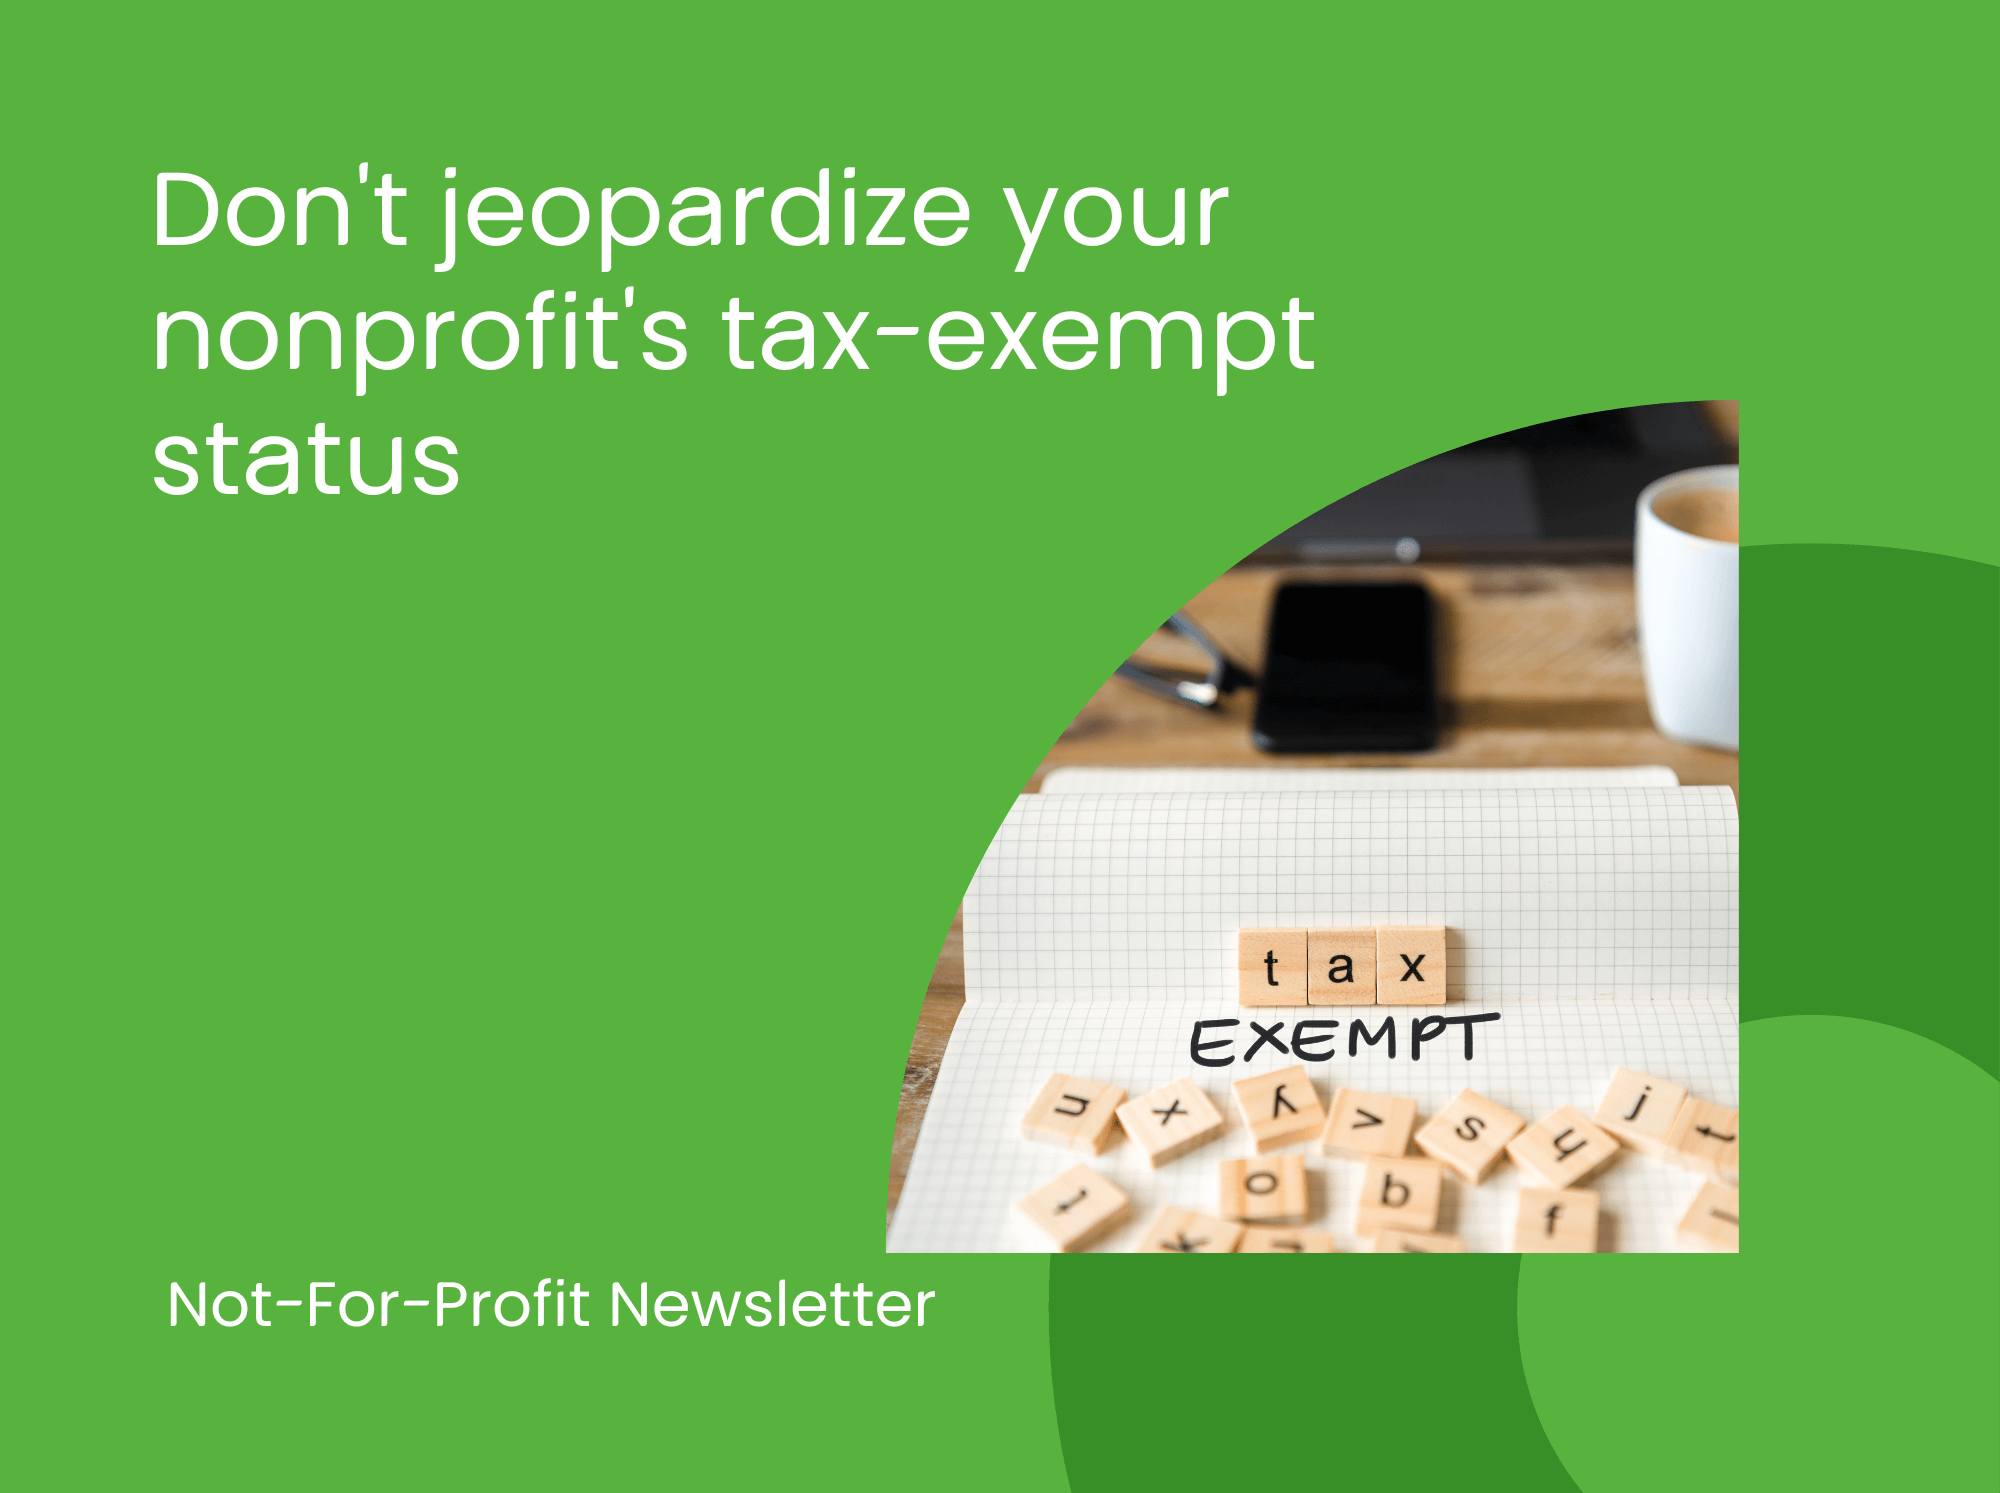 Don't Jeopardize Your Nonprofit's Tax-Exempt Status